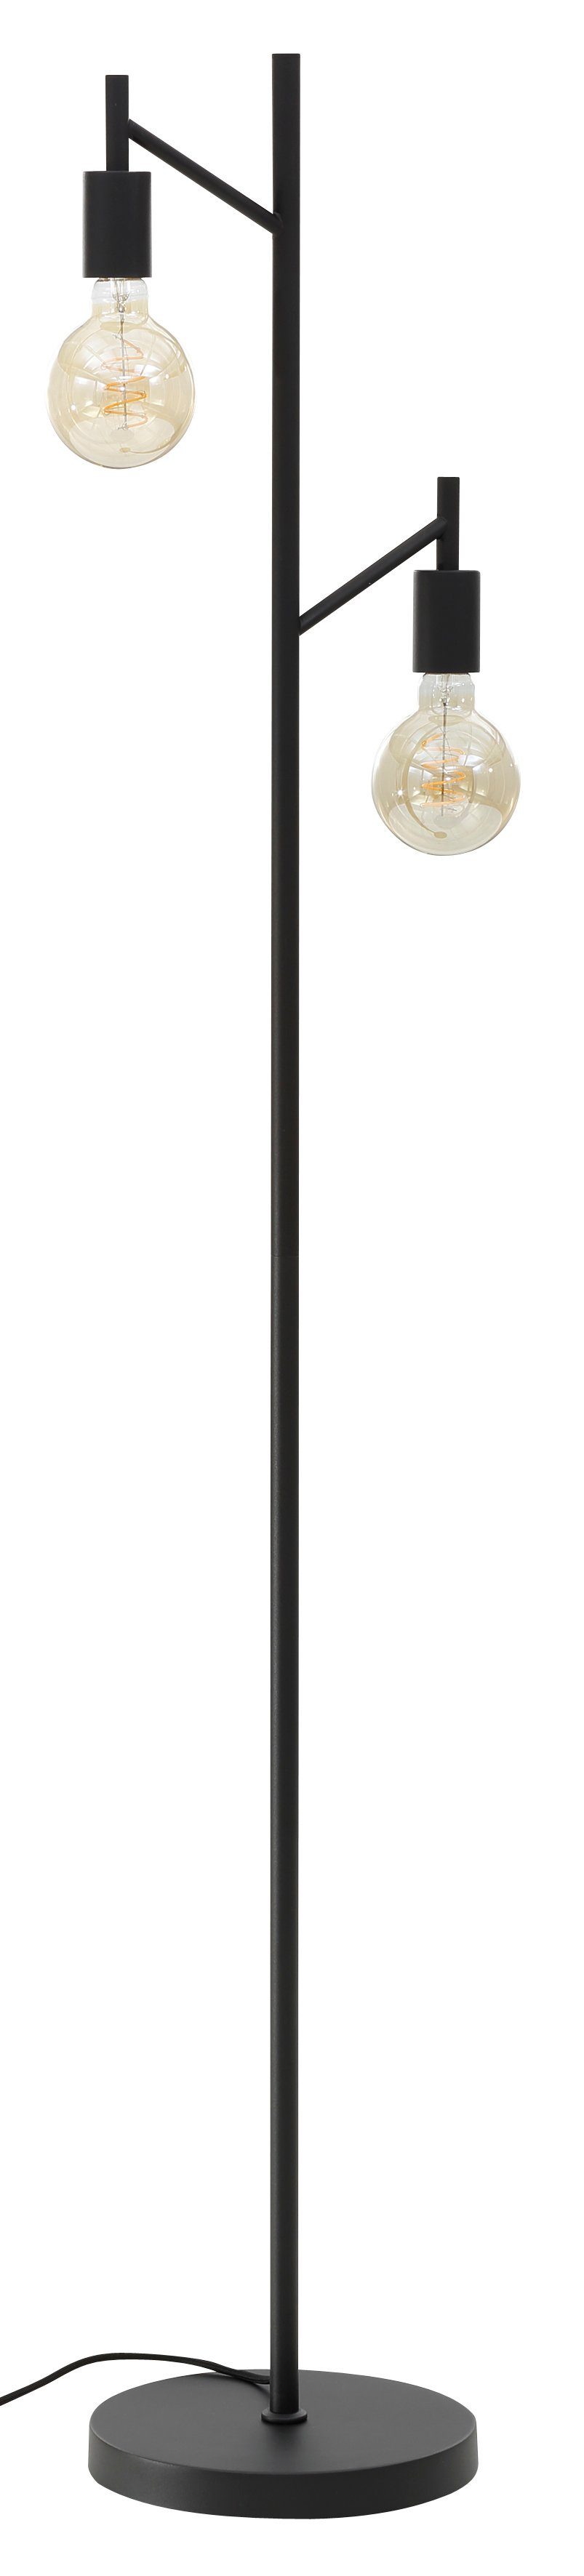 Leonique Stehlampe Jarla, ohne Leuchtmittel, Stehleuchte, 155 cm Höhe schwarze klassisch moderne